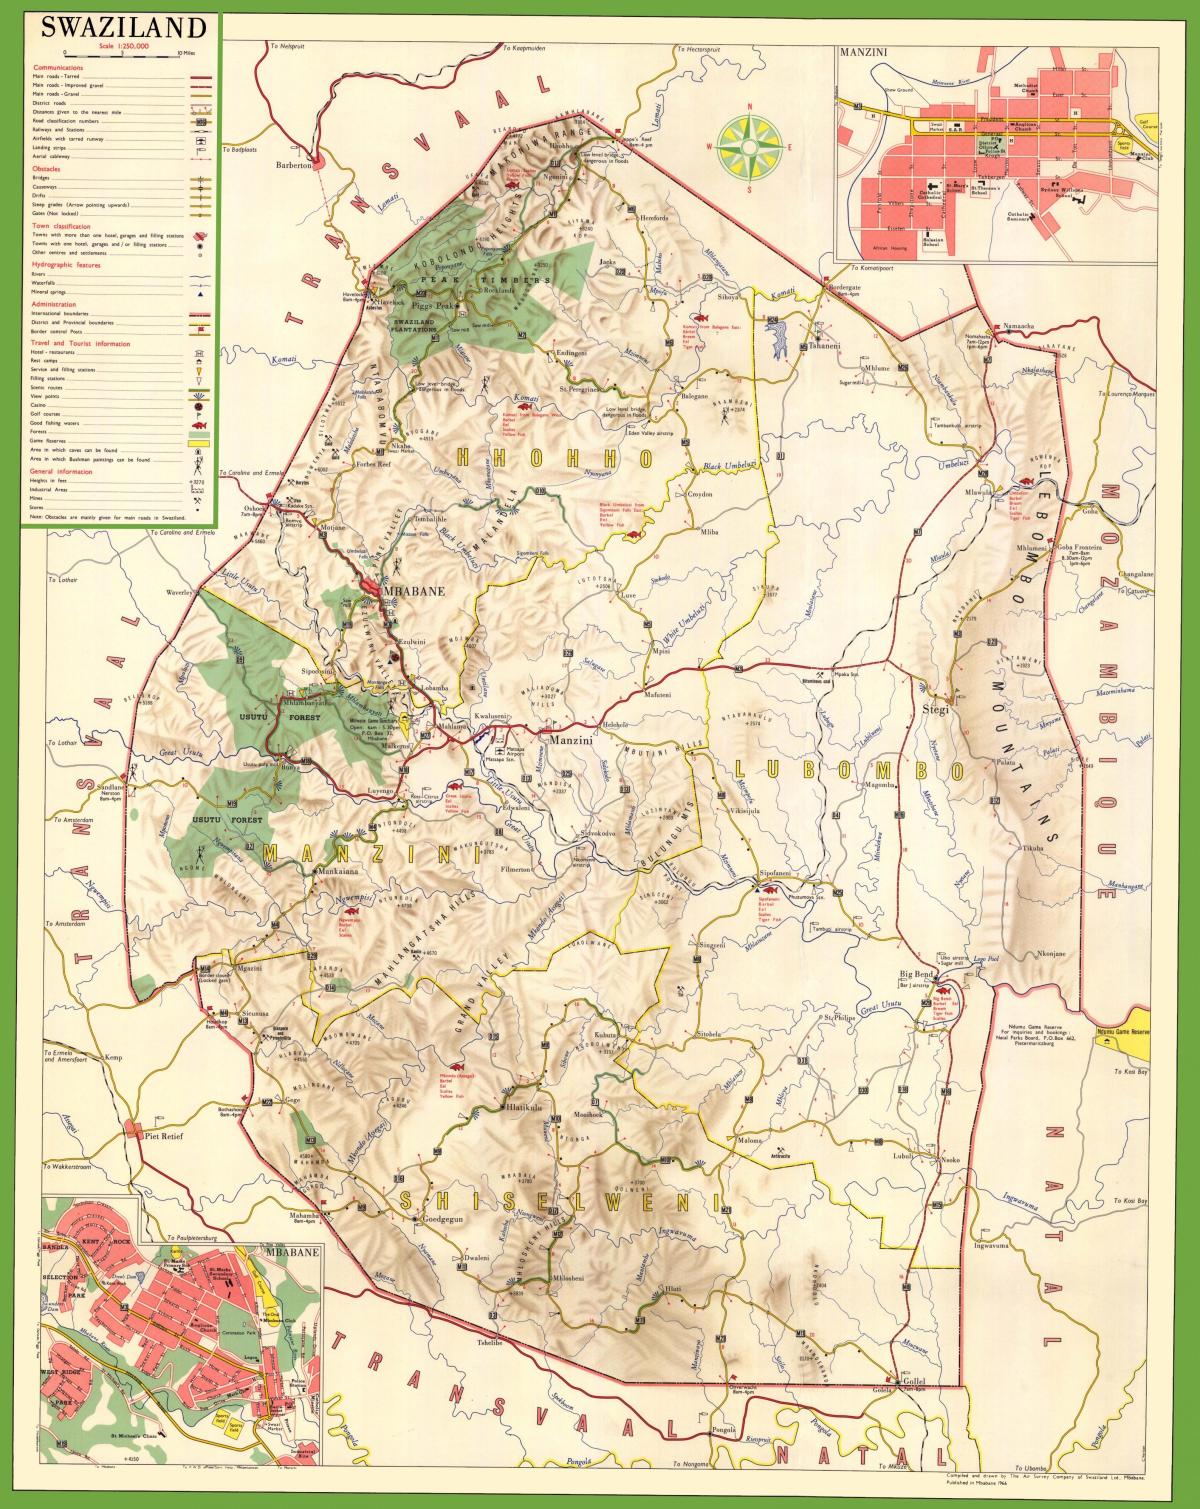 Peta dari Swaziland rinci